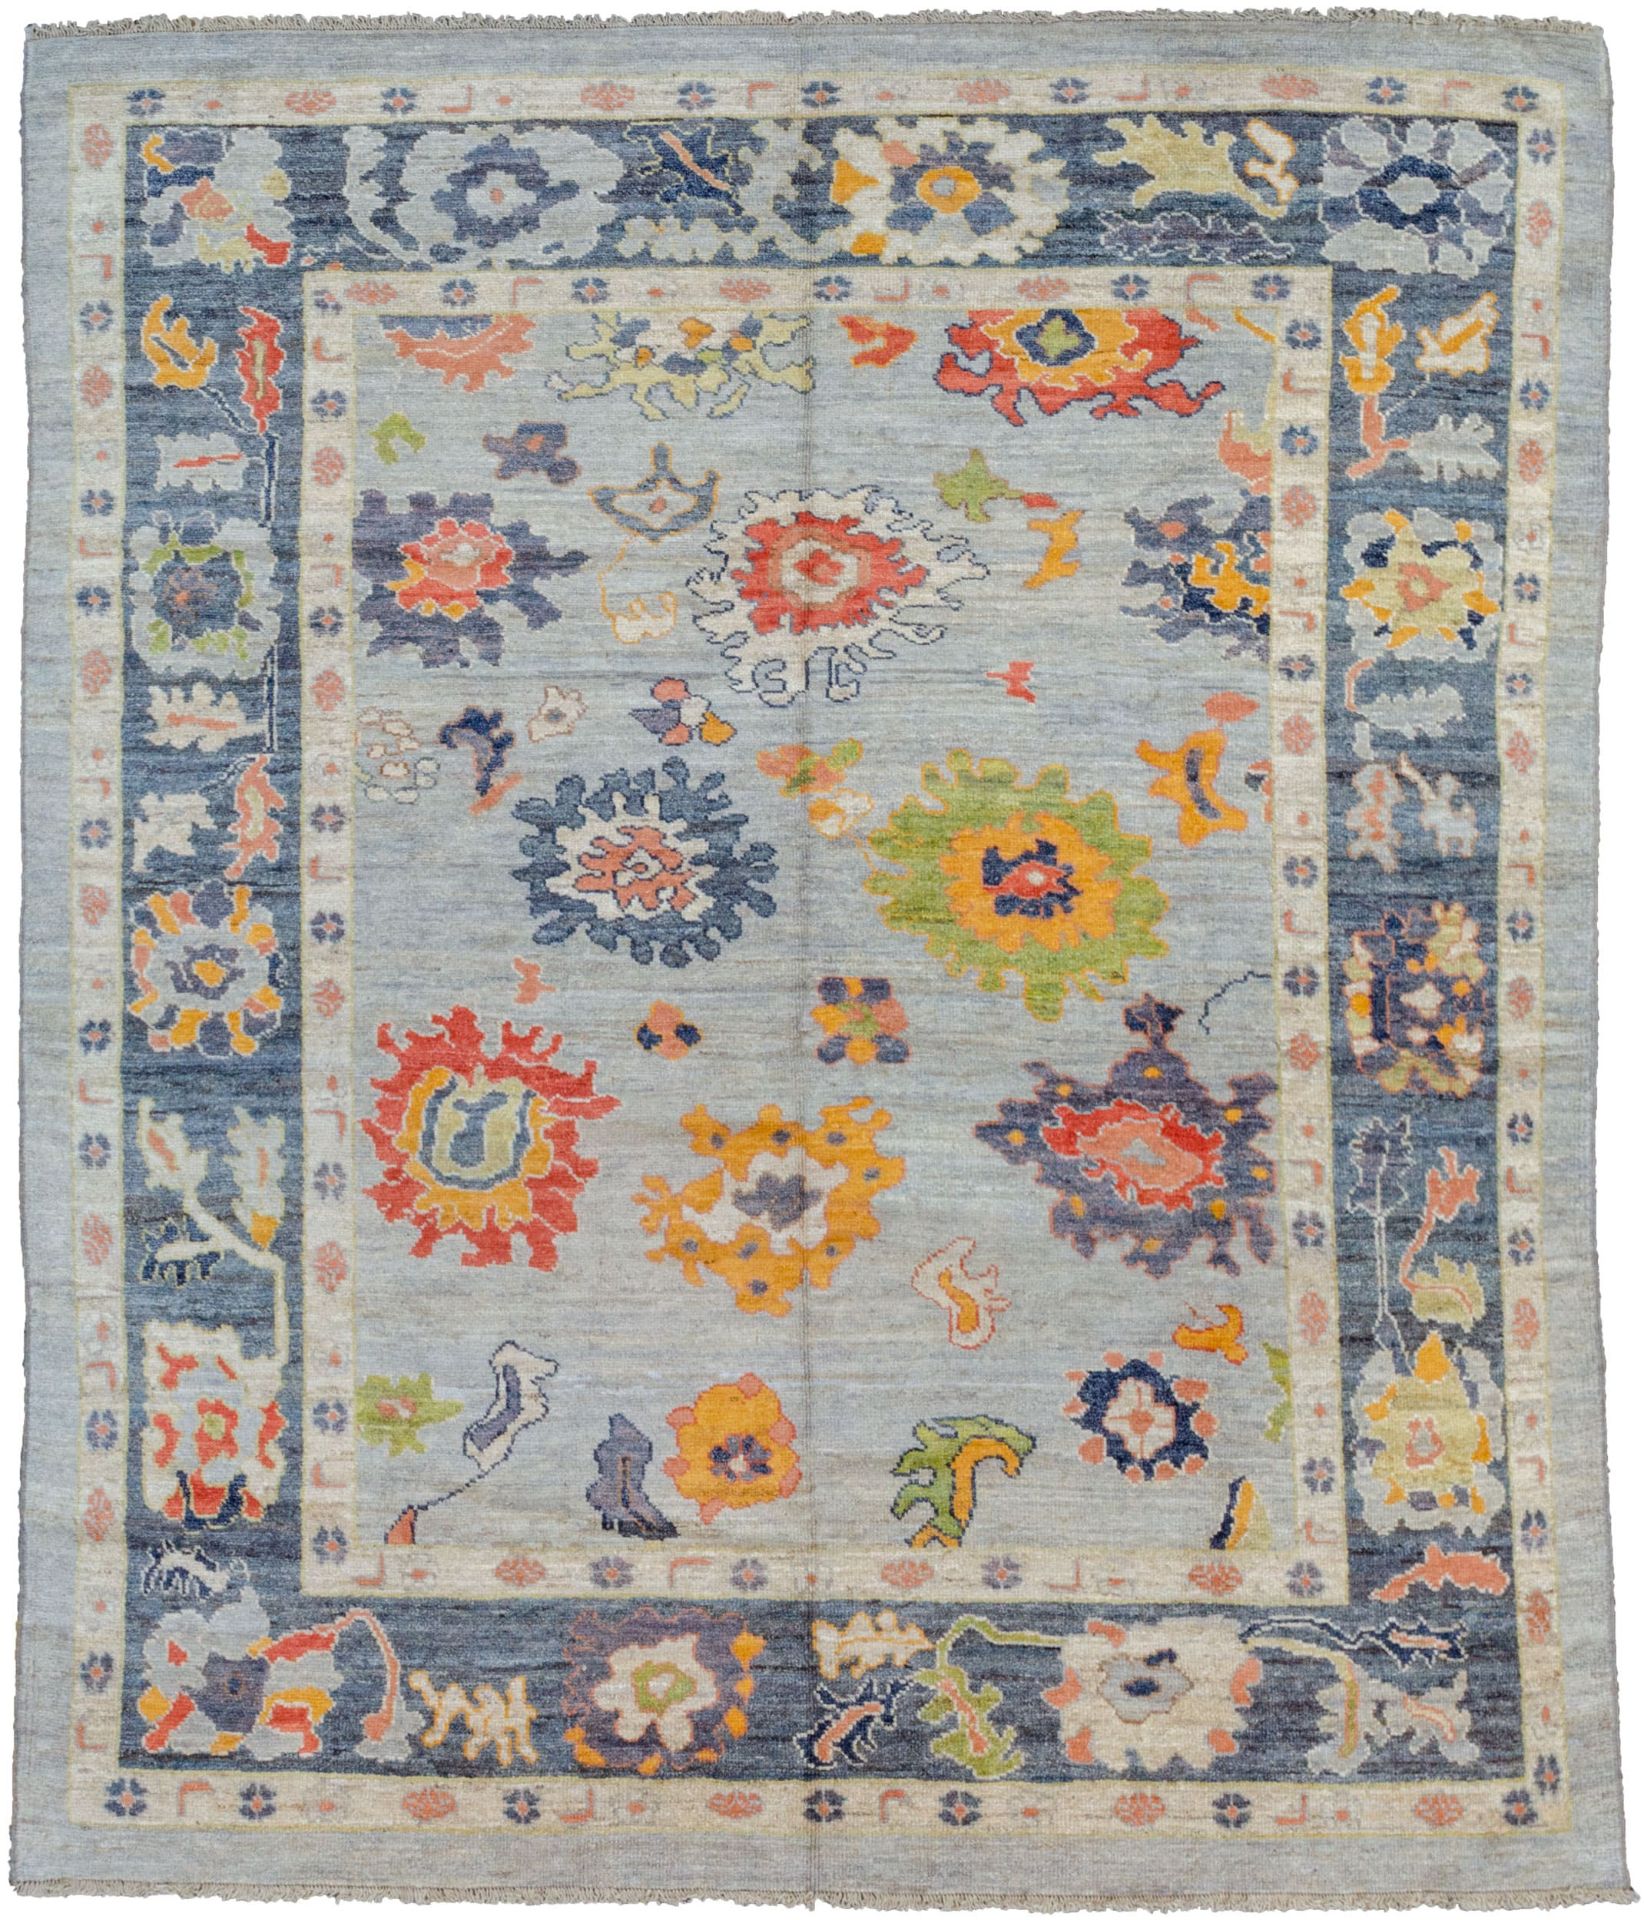 A Ushak carpet